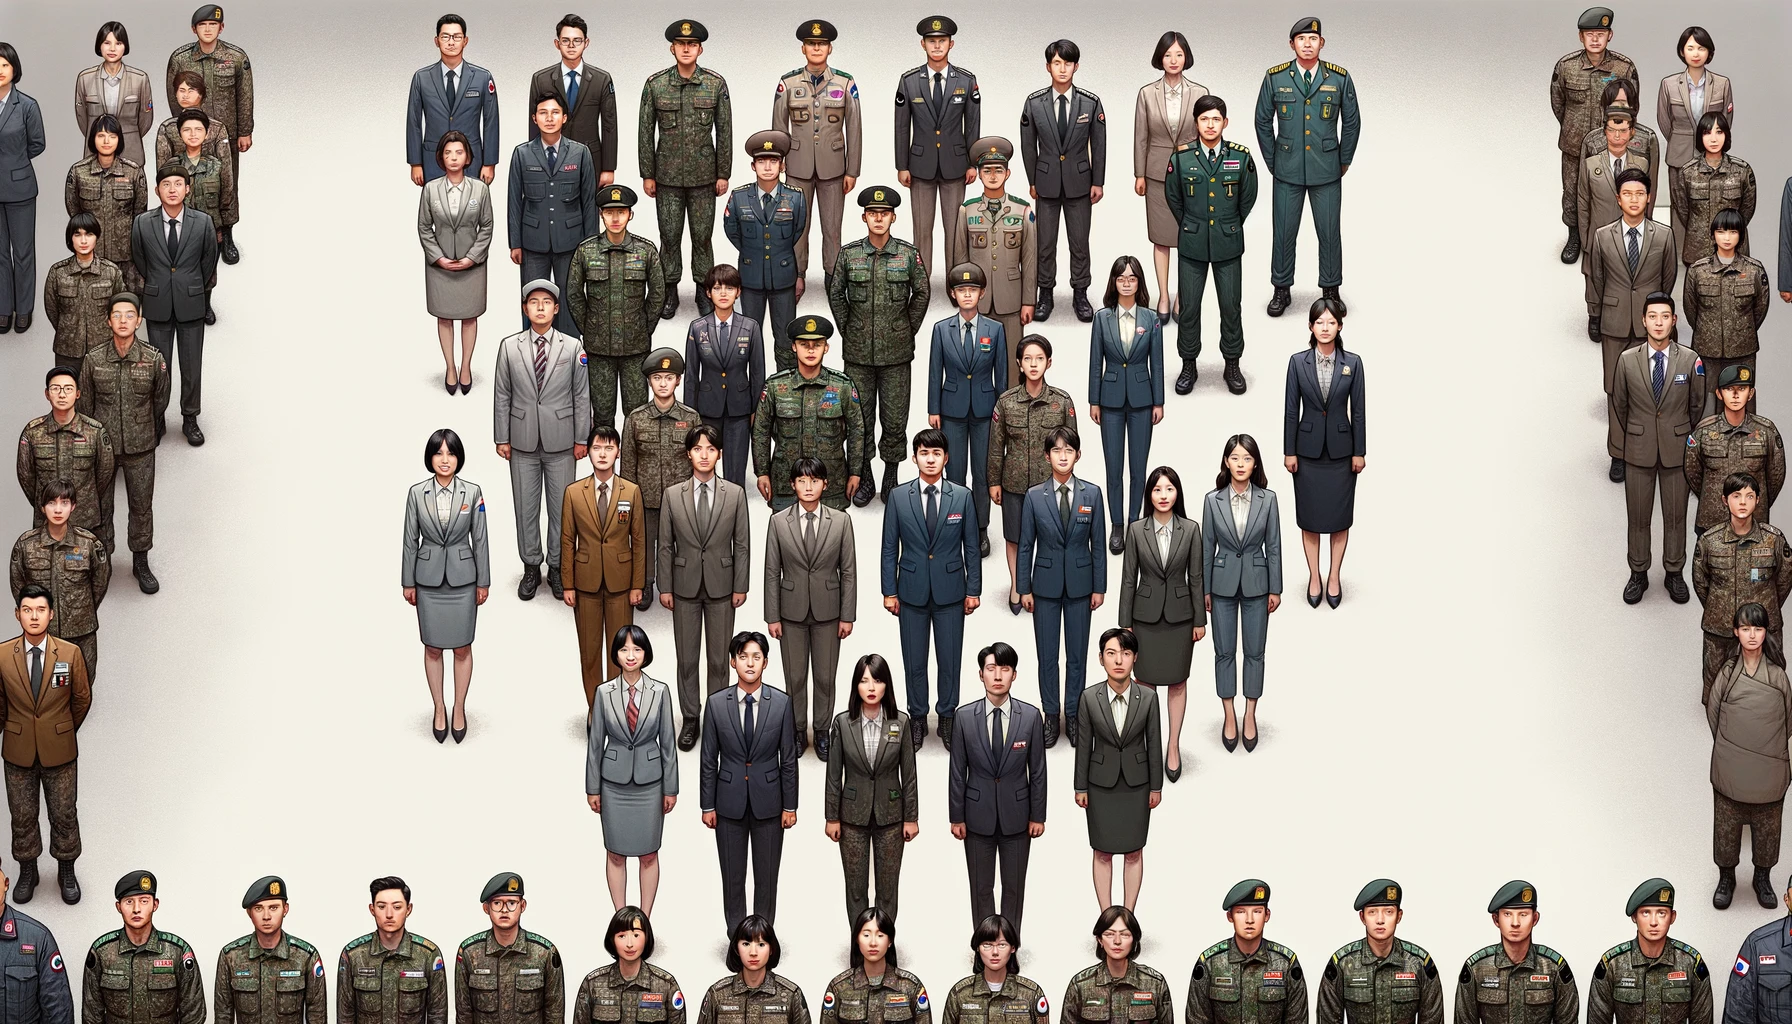 위 이미지는 한국군 여군과 남군&amp;#44; 그리고 공무원들의 남녀 비율을 균등하게 나타내는 디지털 일러스트레이션입니다. 좌측에는 다양한 계급을 대표하는 5명의 여성과 5명의 남성 군인(대한민국 육군)이 표준 군복을 입고 반원 형태로 서 있습니다. 우측에는 다른 정부 부서를 대표하는 5명의 여성과 5명의 남성 공무원들이 정장을 차려입고 역시 반원 형태로 서 있습니다. 배경은 중립적이며 전문적인 환경을 상징합니다. 이 일러스트레이션은 현실적인 스타일로 제작되었습니다.